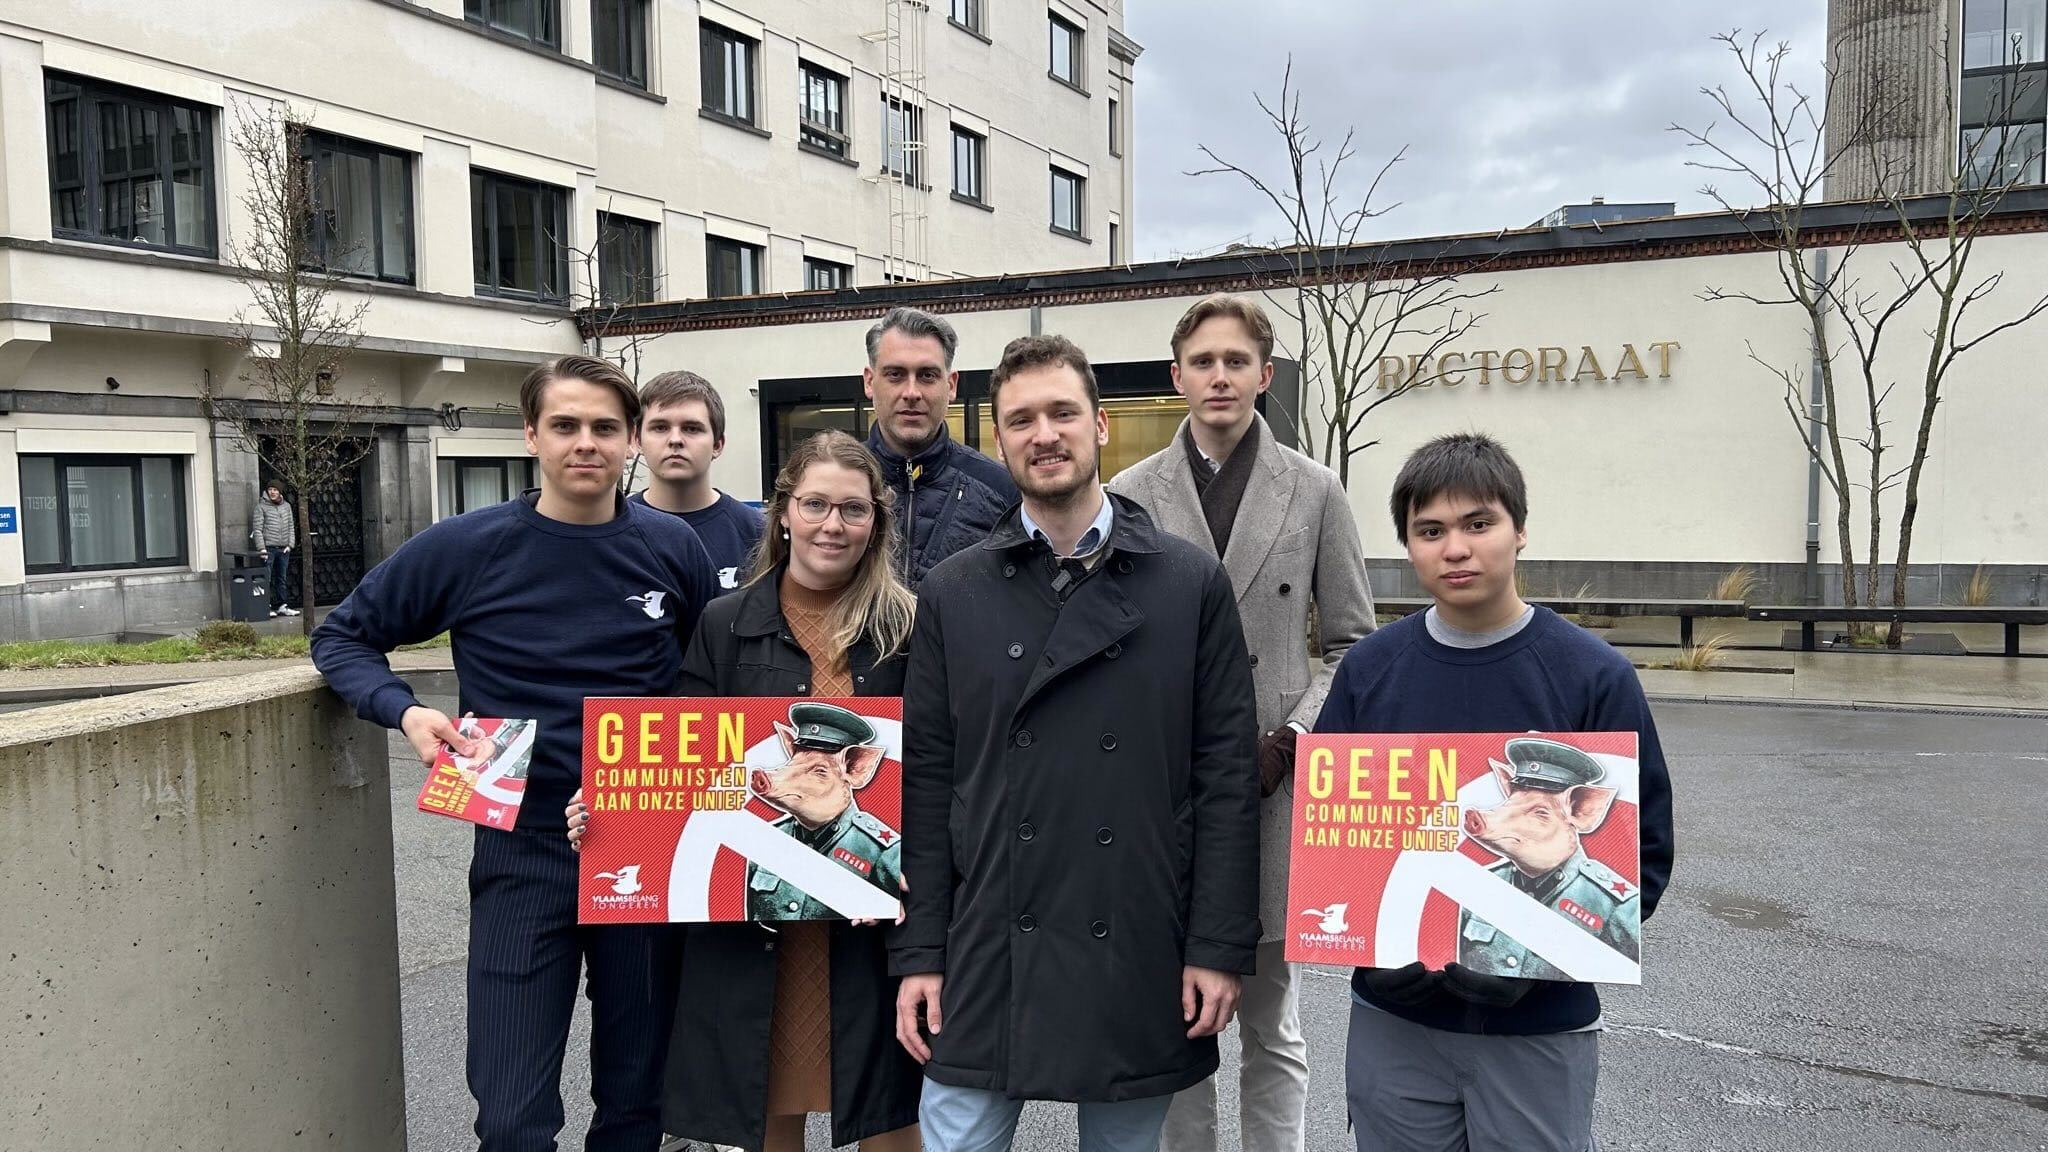 Leden van Vlaams Belang Jongeren voeren actie nabij het rectoraat van de Universiteit Gent. Foto VBJ